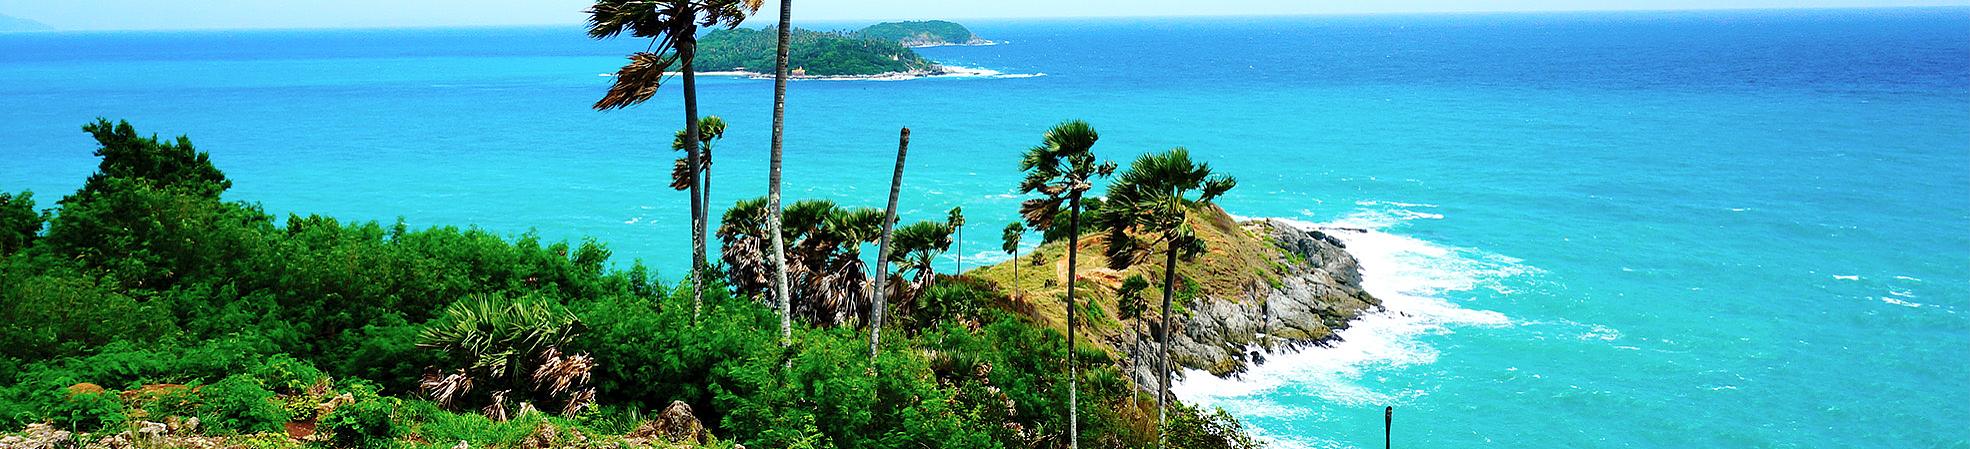 Top 10 Best Beach Destinations in Thailand